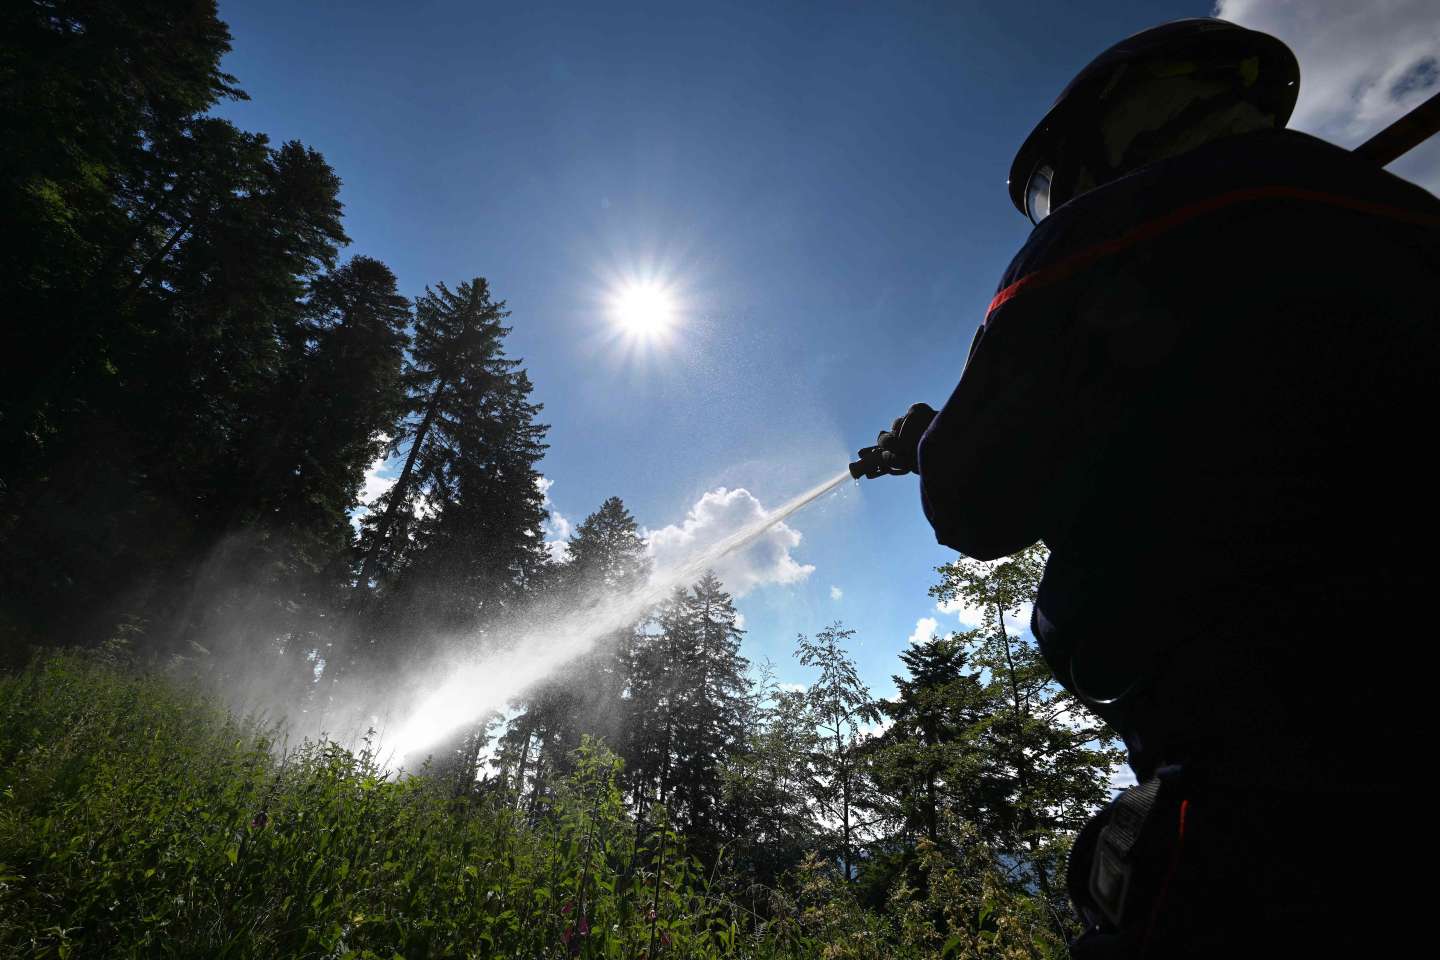 Incendie dans les Vosges, une dizaine d’hectares détruits